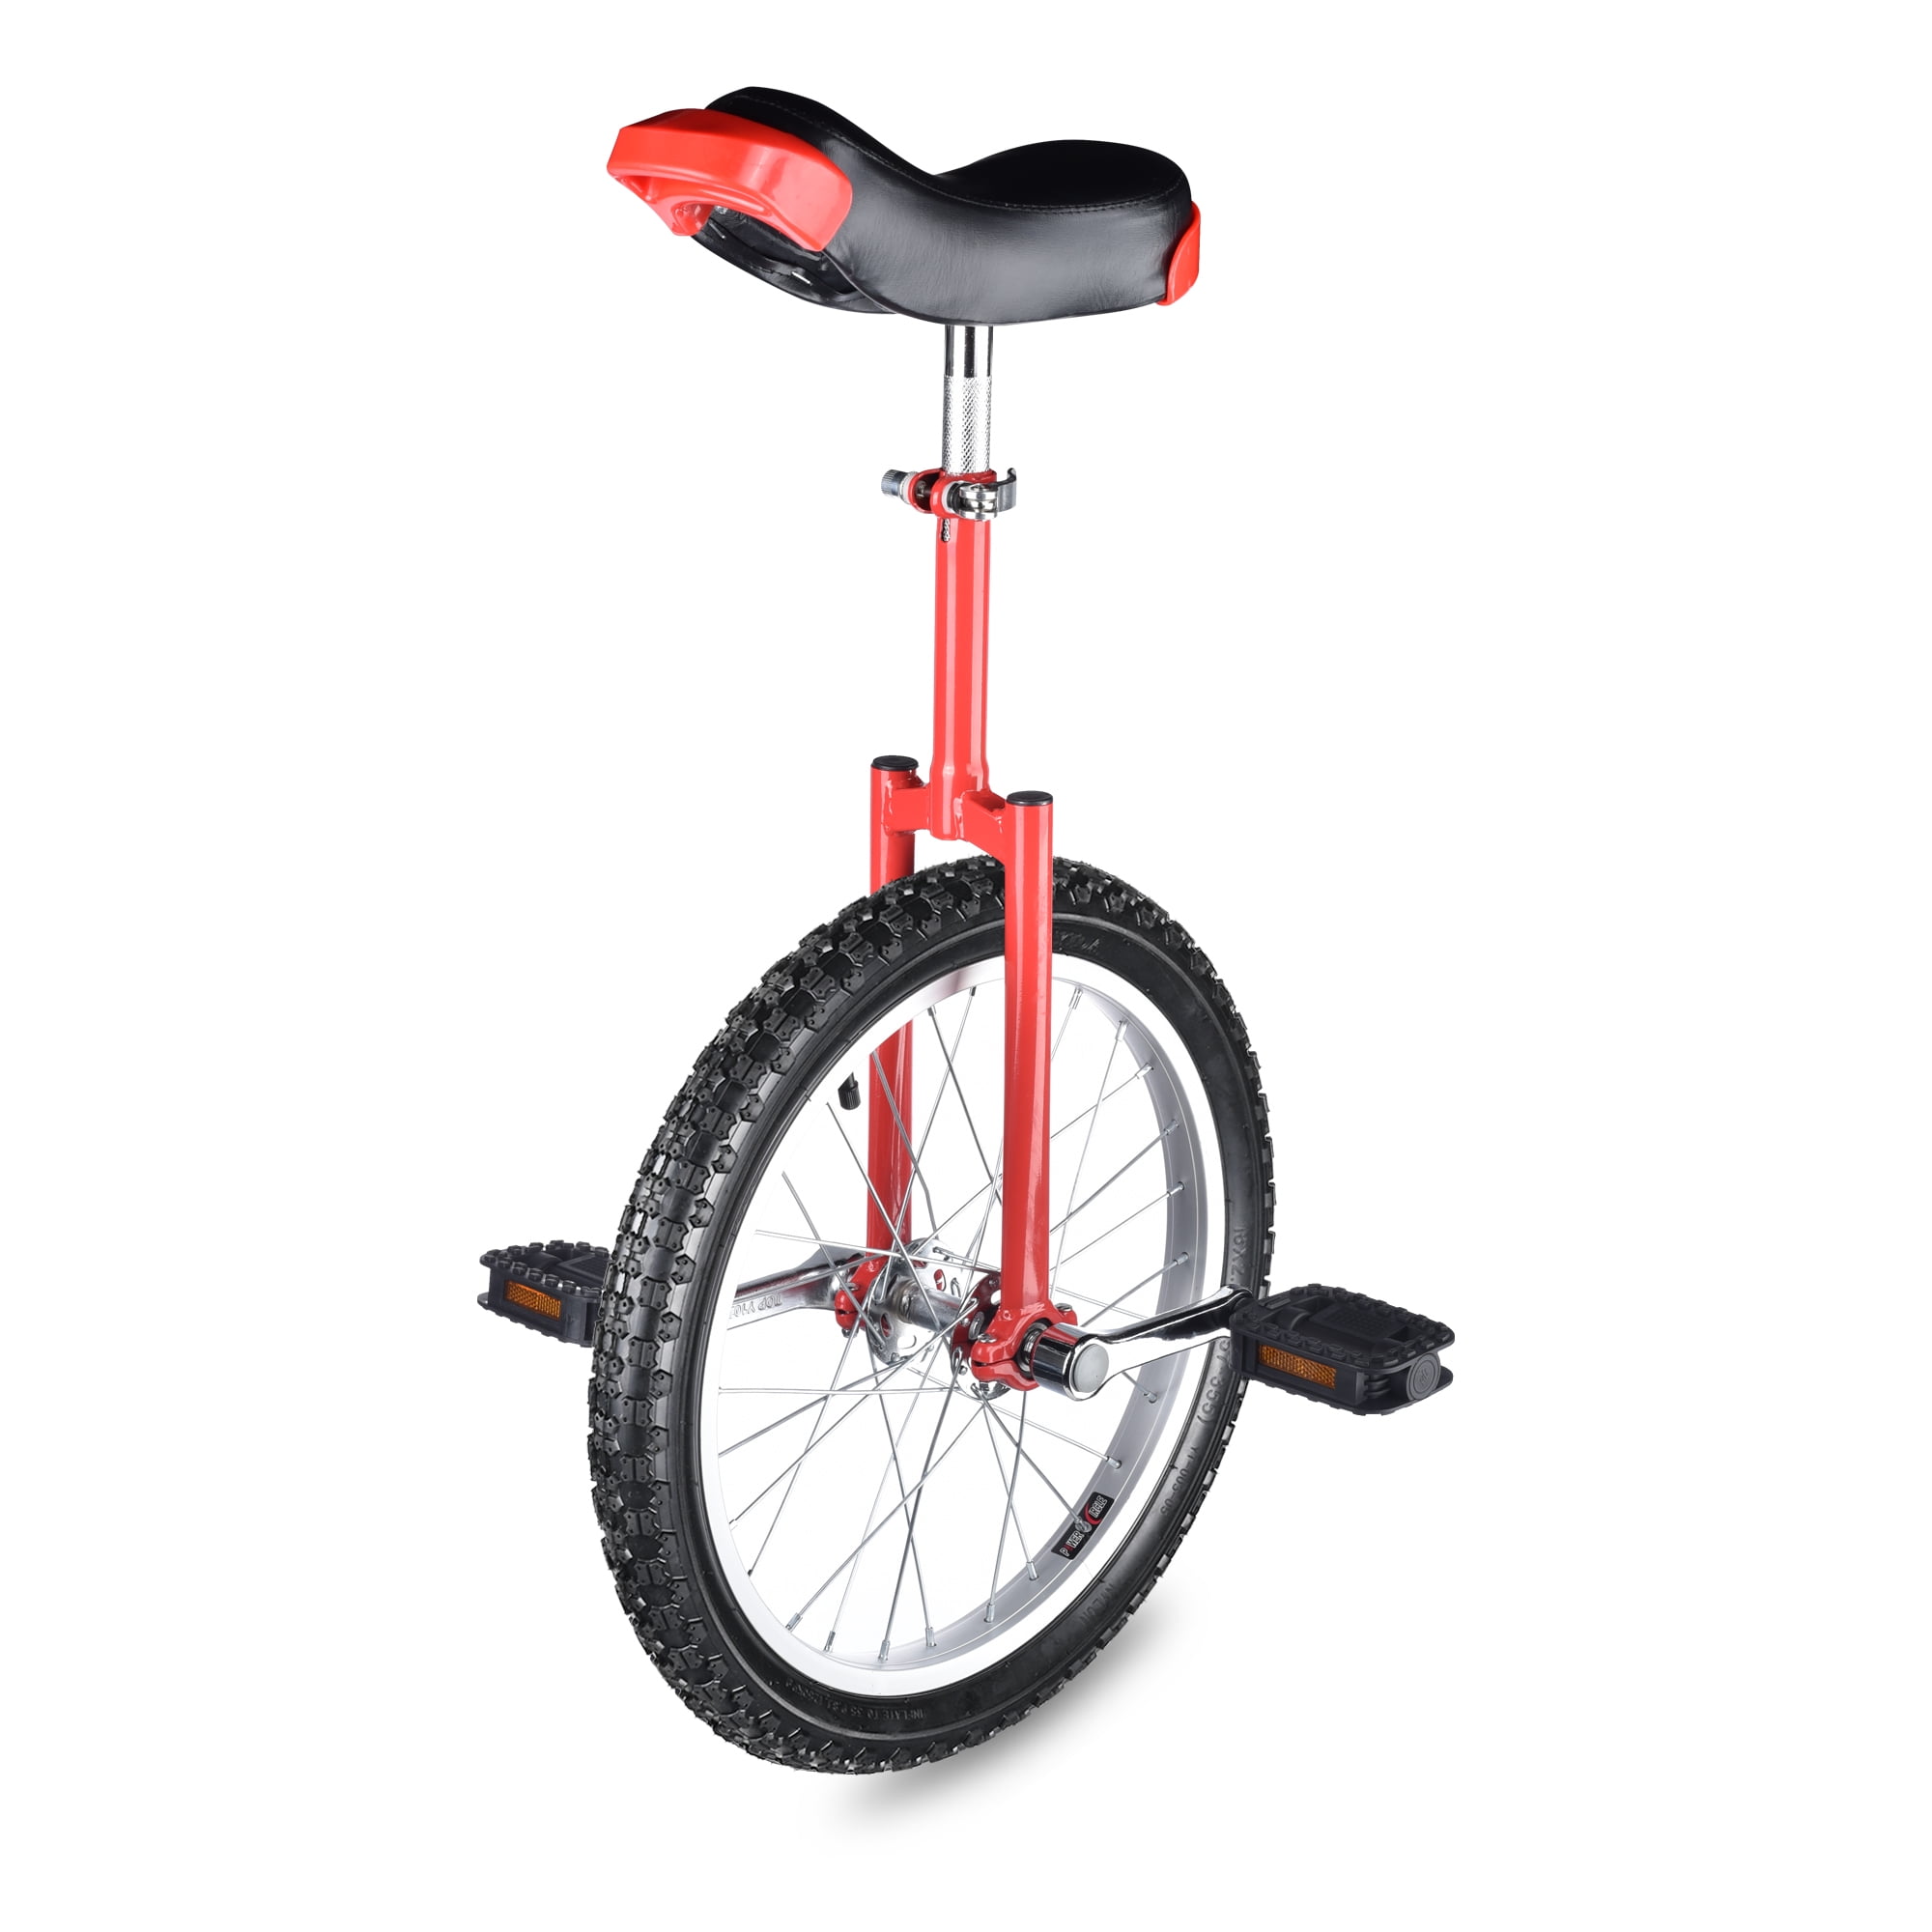 24" Unicycle Bike Cycling Circus Skidproof Balance Exercise Adjustable Height 